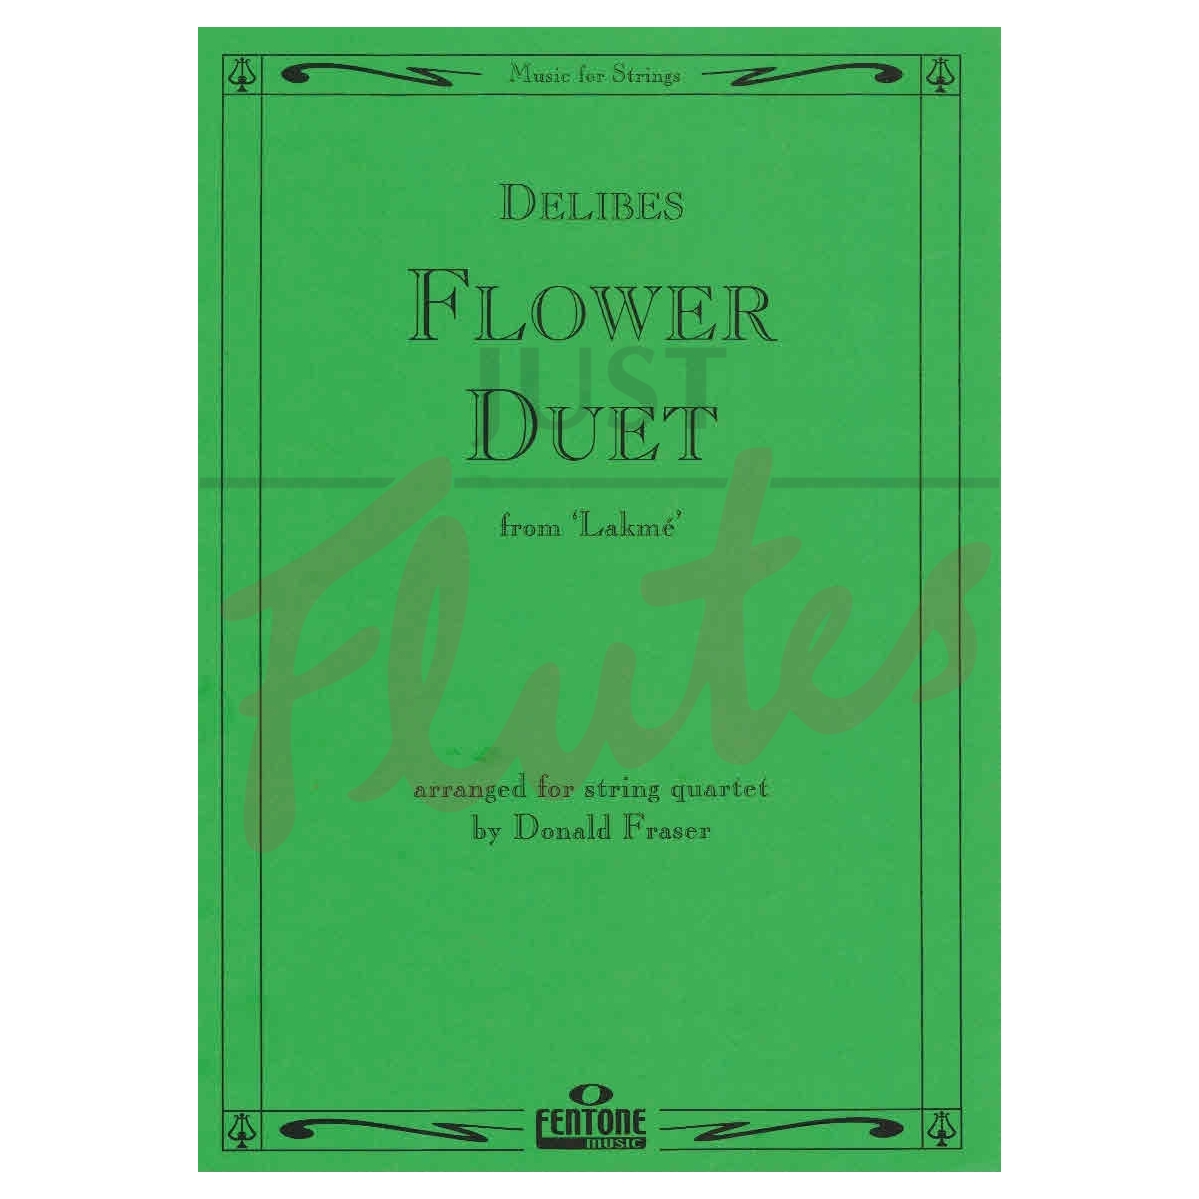 Flower Duet [String Quartet]